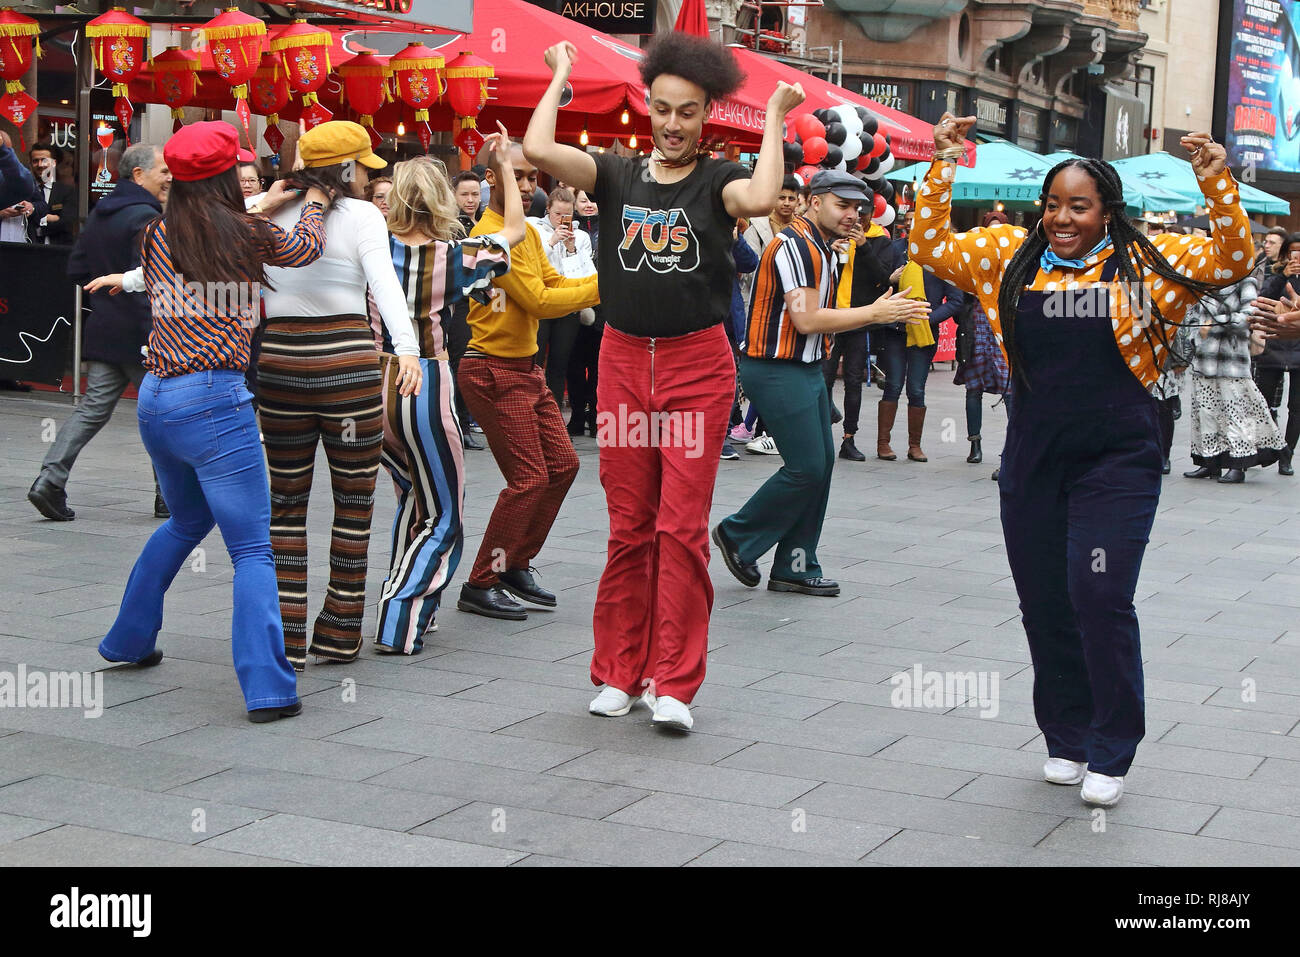 Die amerikanische Seele crew gesehen tanzen zusammen in den Straßen von London. Zu Ehren der BET (Black Entertainment Television) Netzwerk von Groovy neue Periode Drama, amerikanische Seele, ein Flash Mob Dance Übernahme auf den Straßen von London. Stockfoto